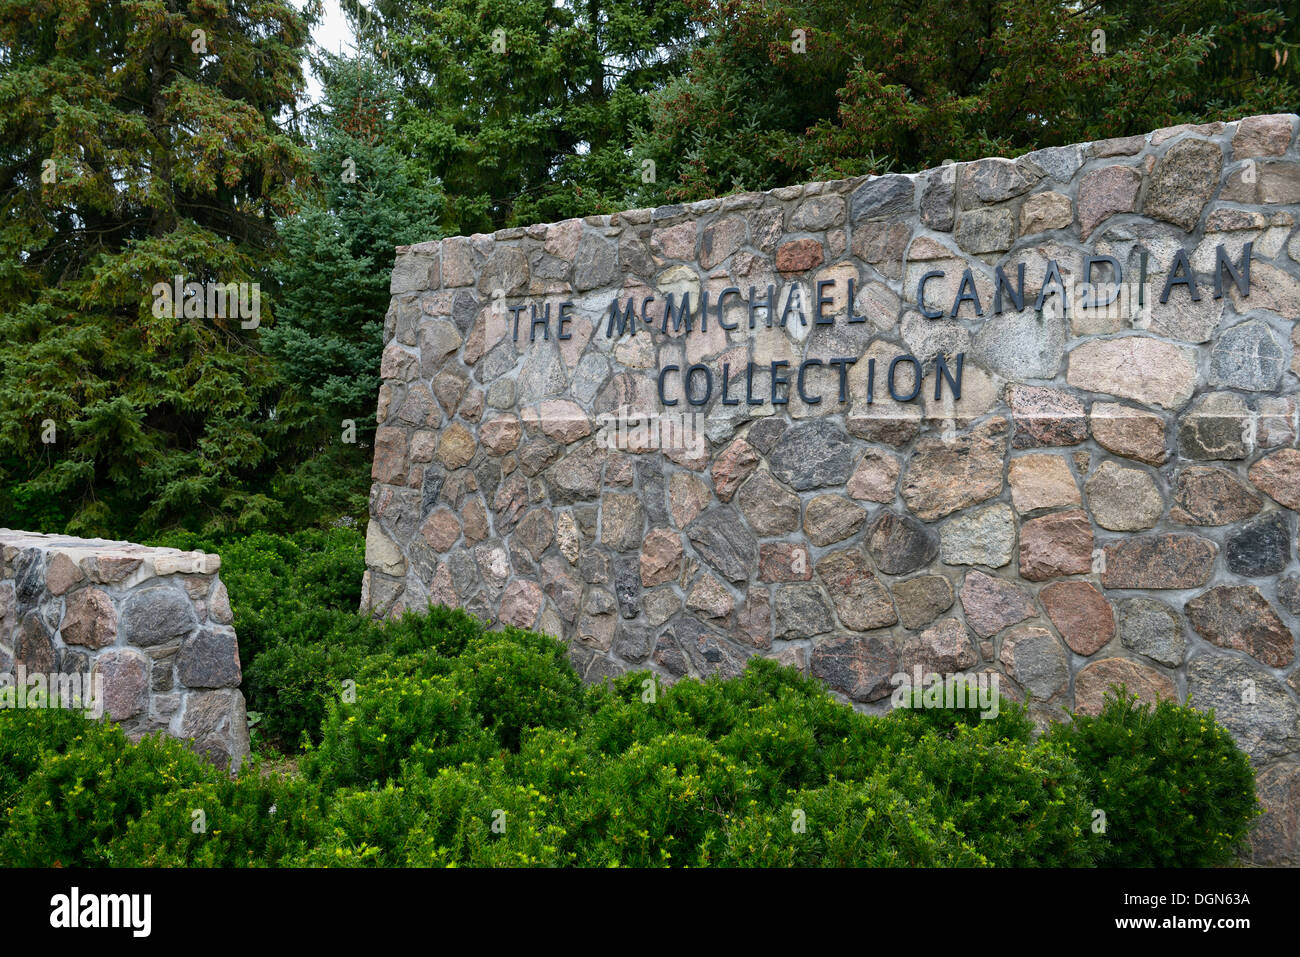 Señal de pared de granito para la colección de arte canadiense McMichael en Kleinburg Ontario Foto de stock